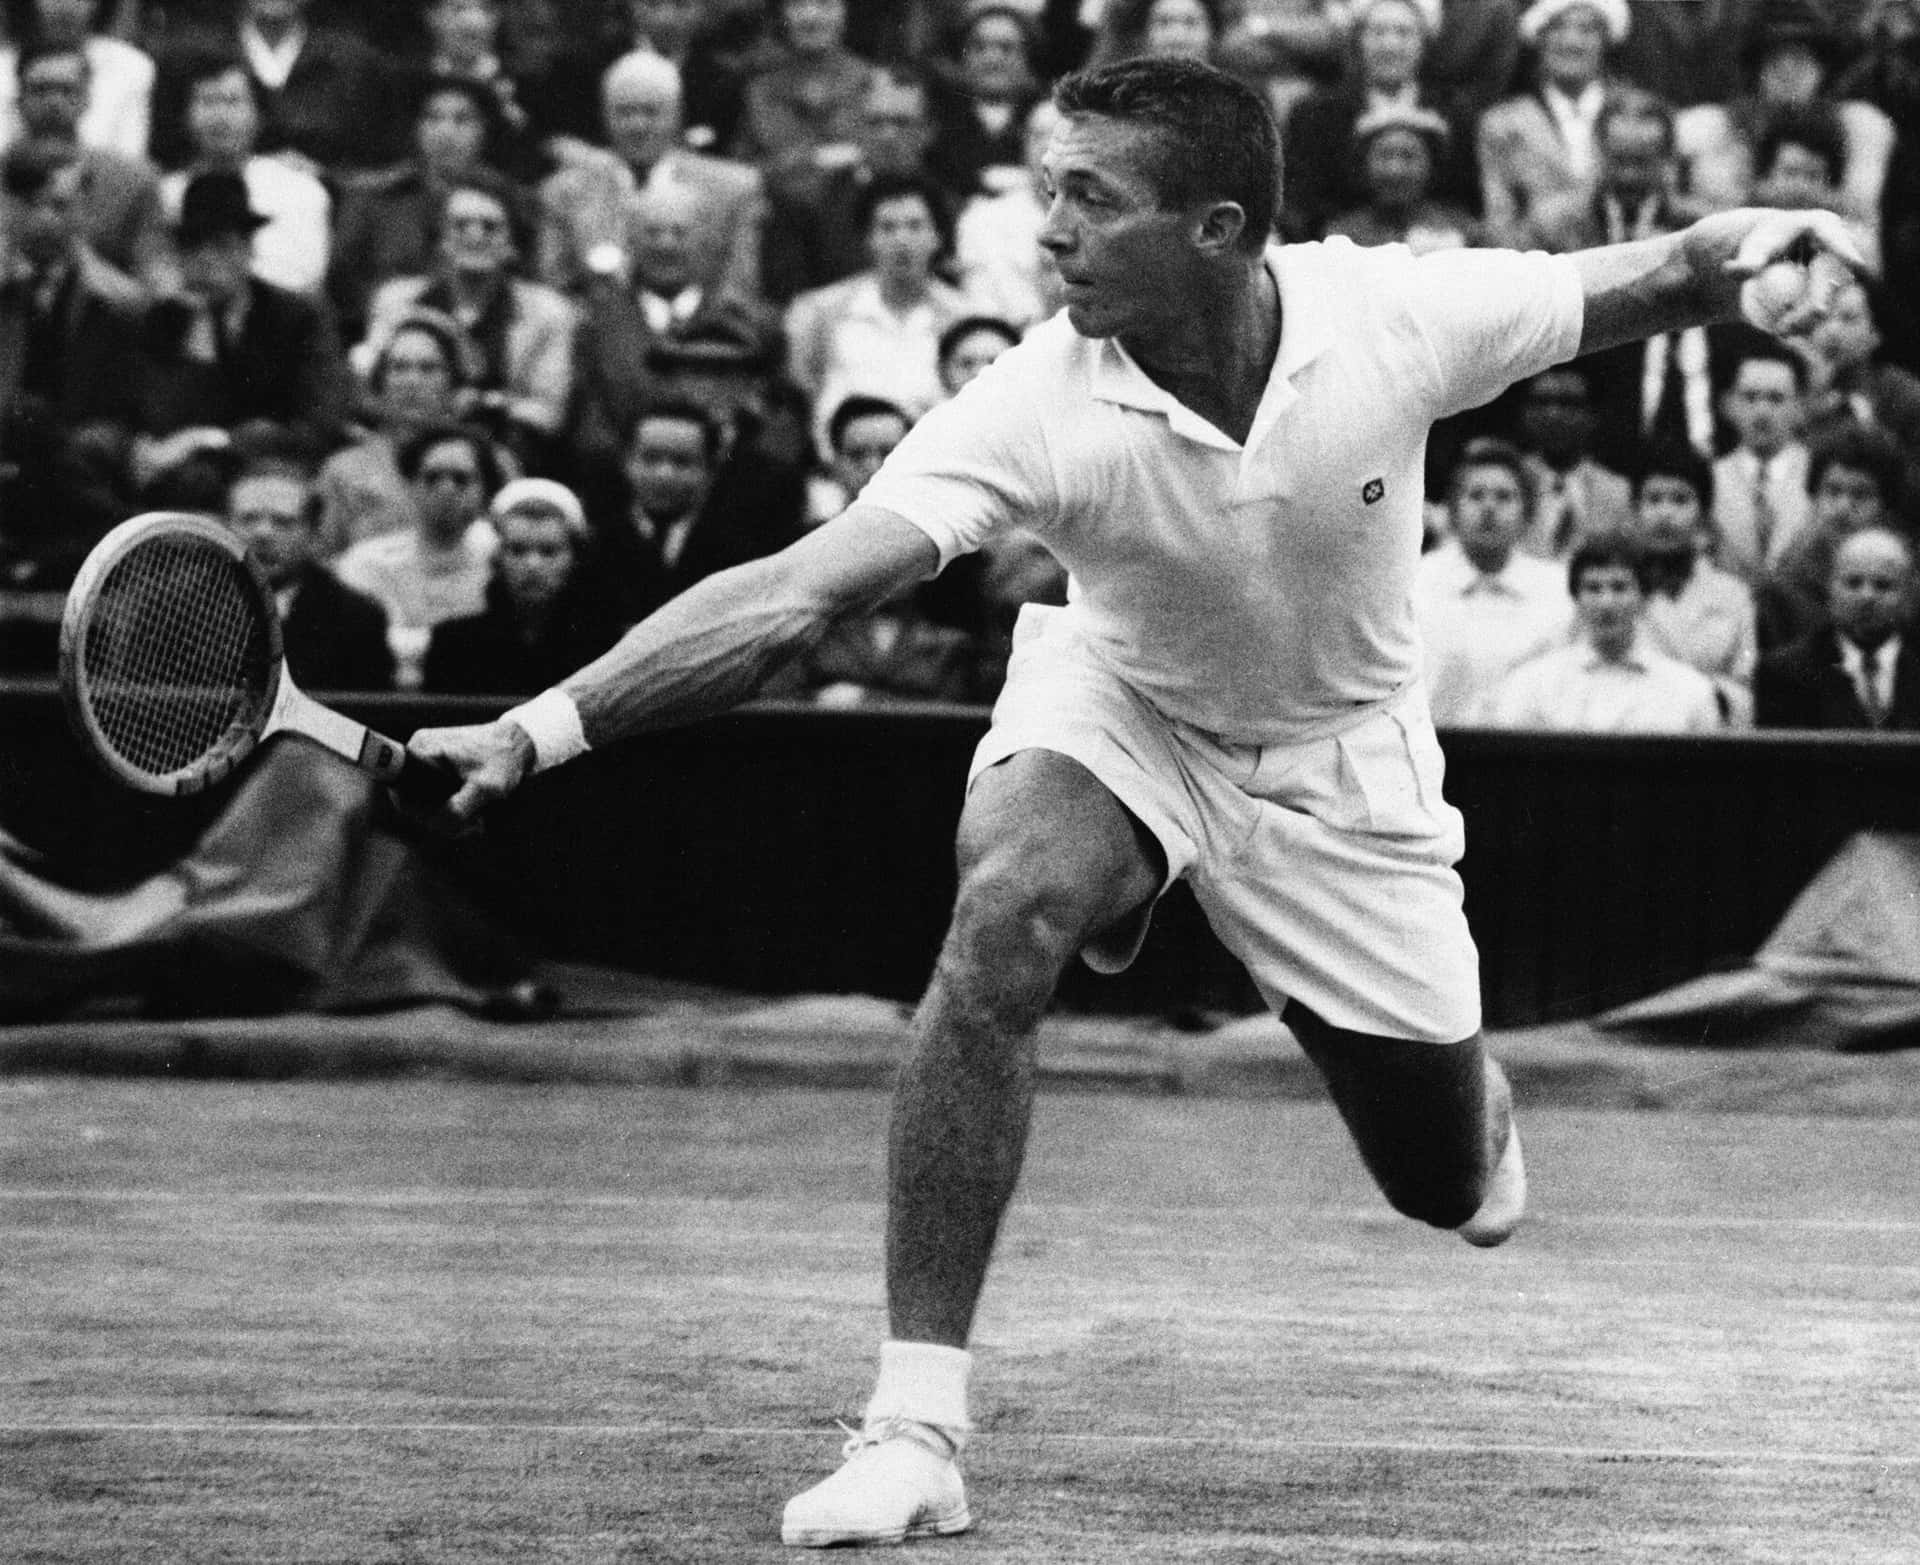 Dobbelt dit mest selvsikre smil med Tony Traberts legendariske 1955 Wimbledon Finaler-tapet. Wallpaper